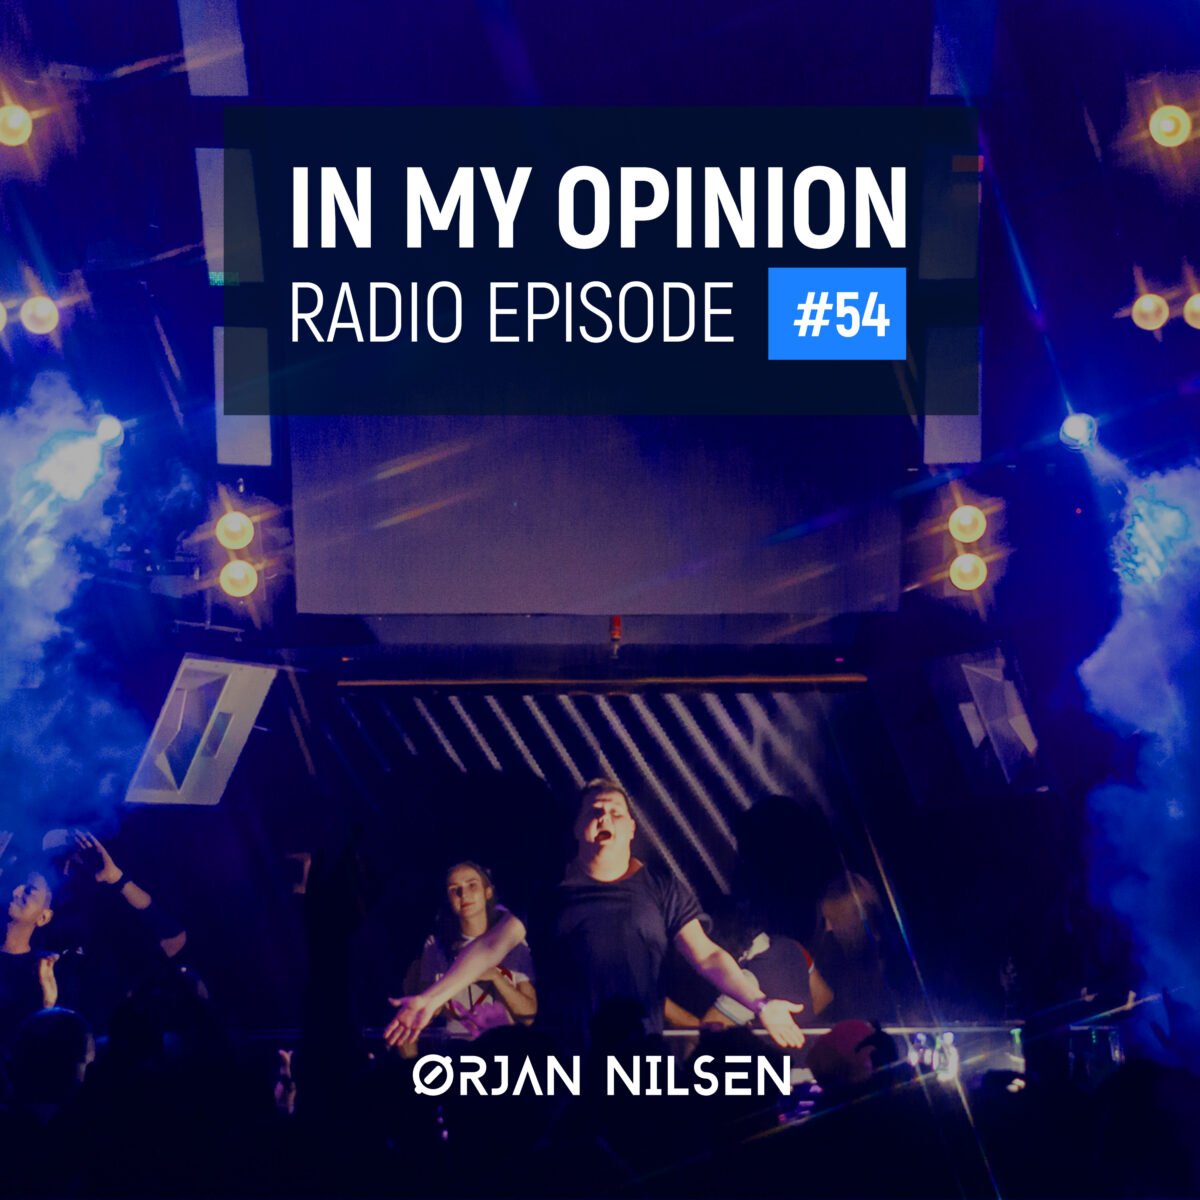 Orjan Nilsen - In My Opinion Radio (Episode 052)Orjan Nilsen - In My Opinion Radio (Episode 054)